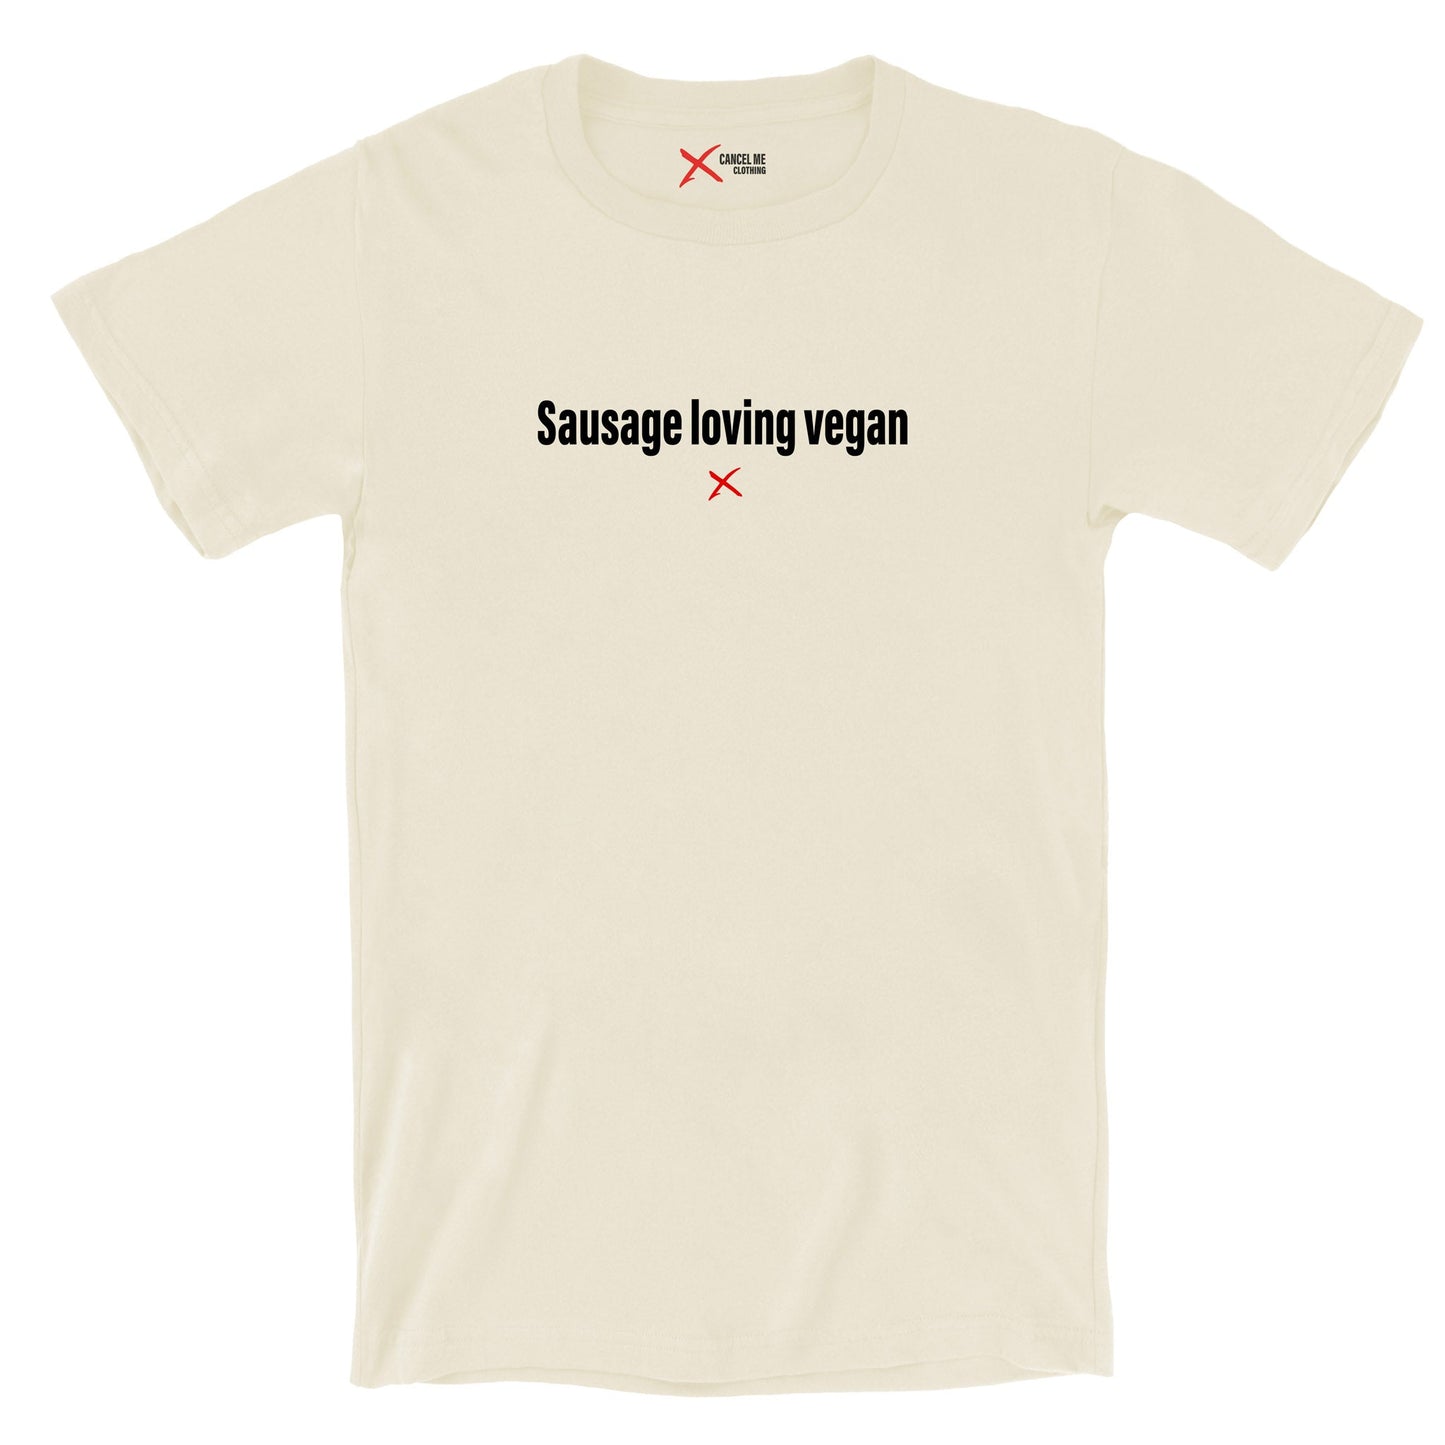 Sausage loving vegan - Shirt